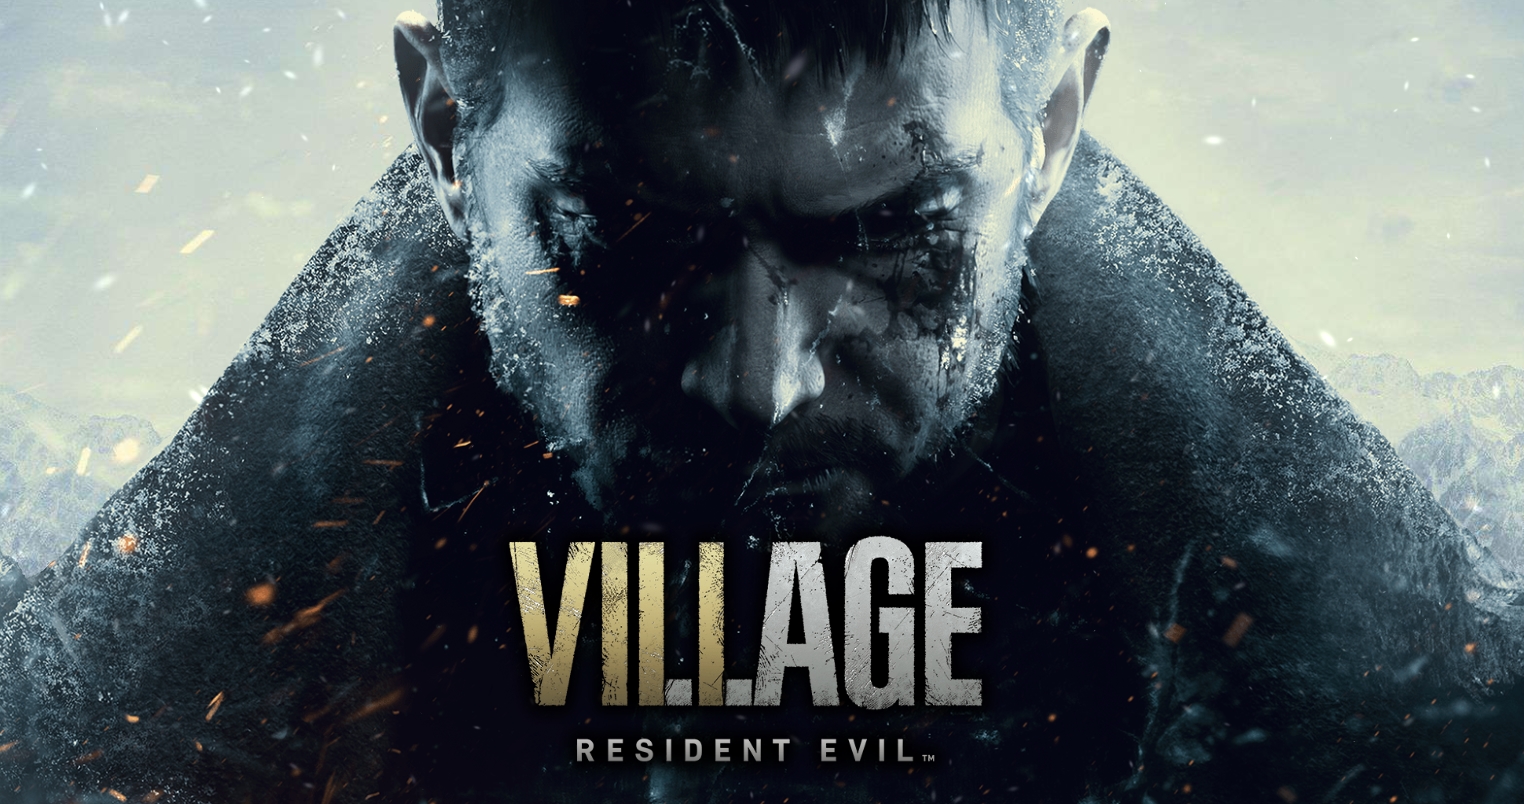 , Demo gratuita de Resident Evil Village disponível hoje e o jogo chega em Maio